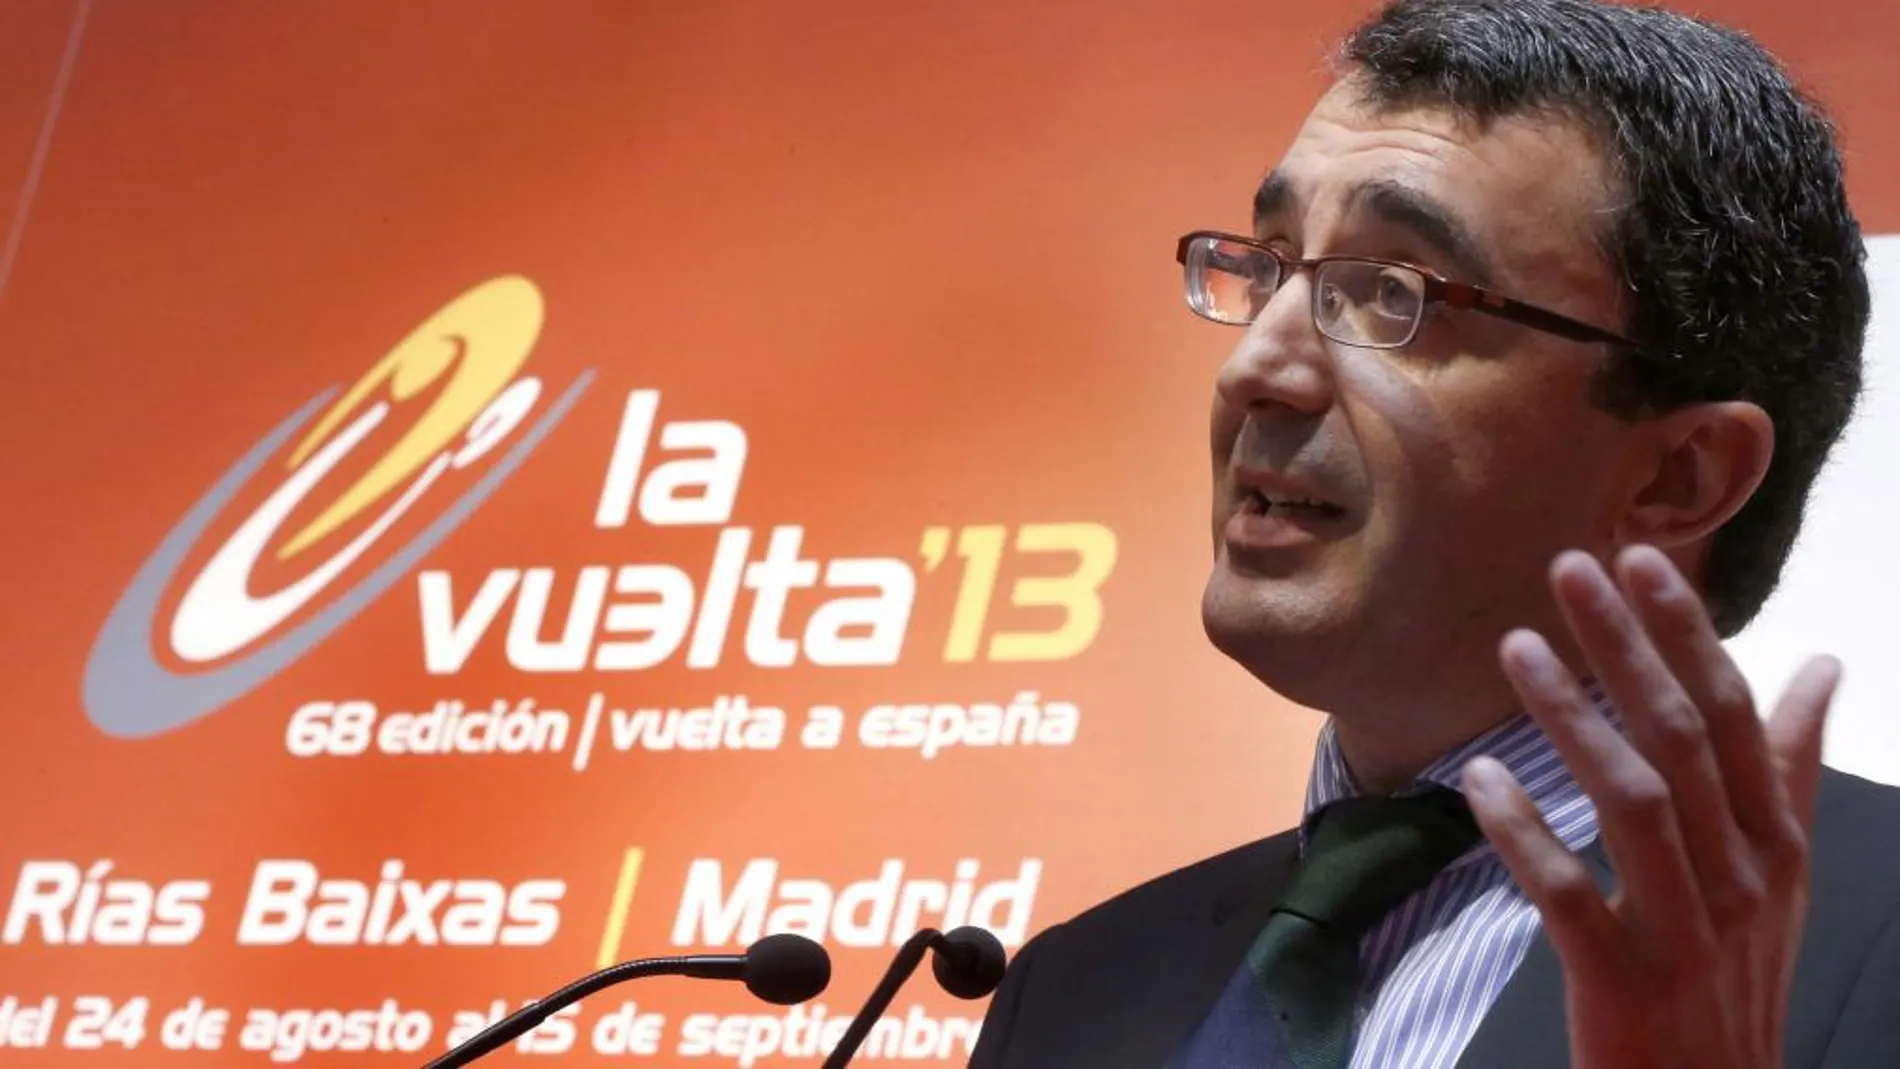 El director general de la Vuelta, Javier Guillén, durante la presentación del patrocinador.